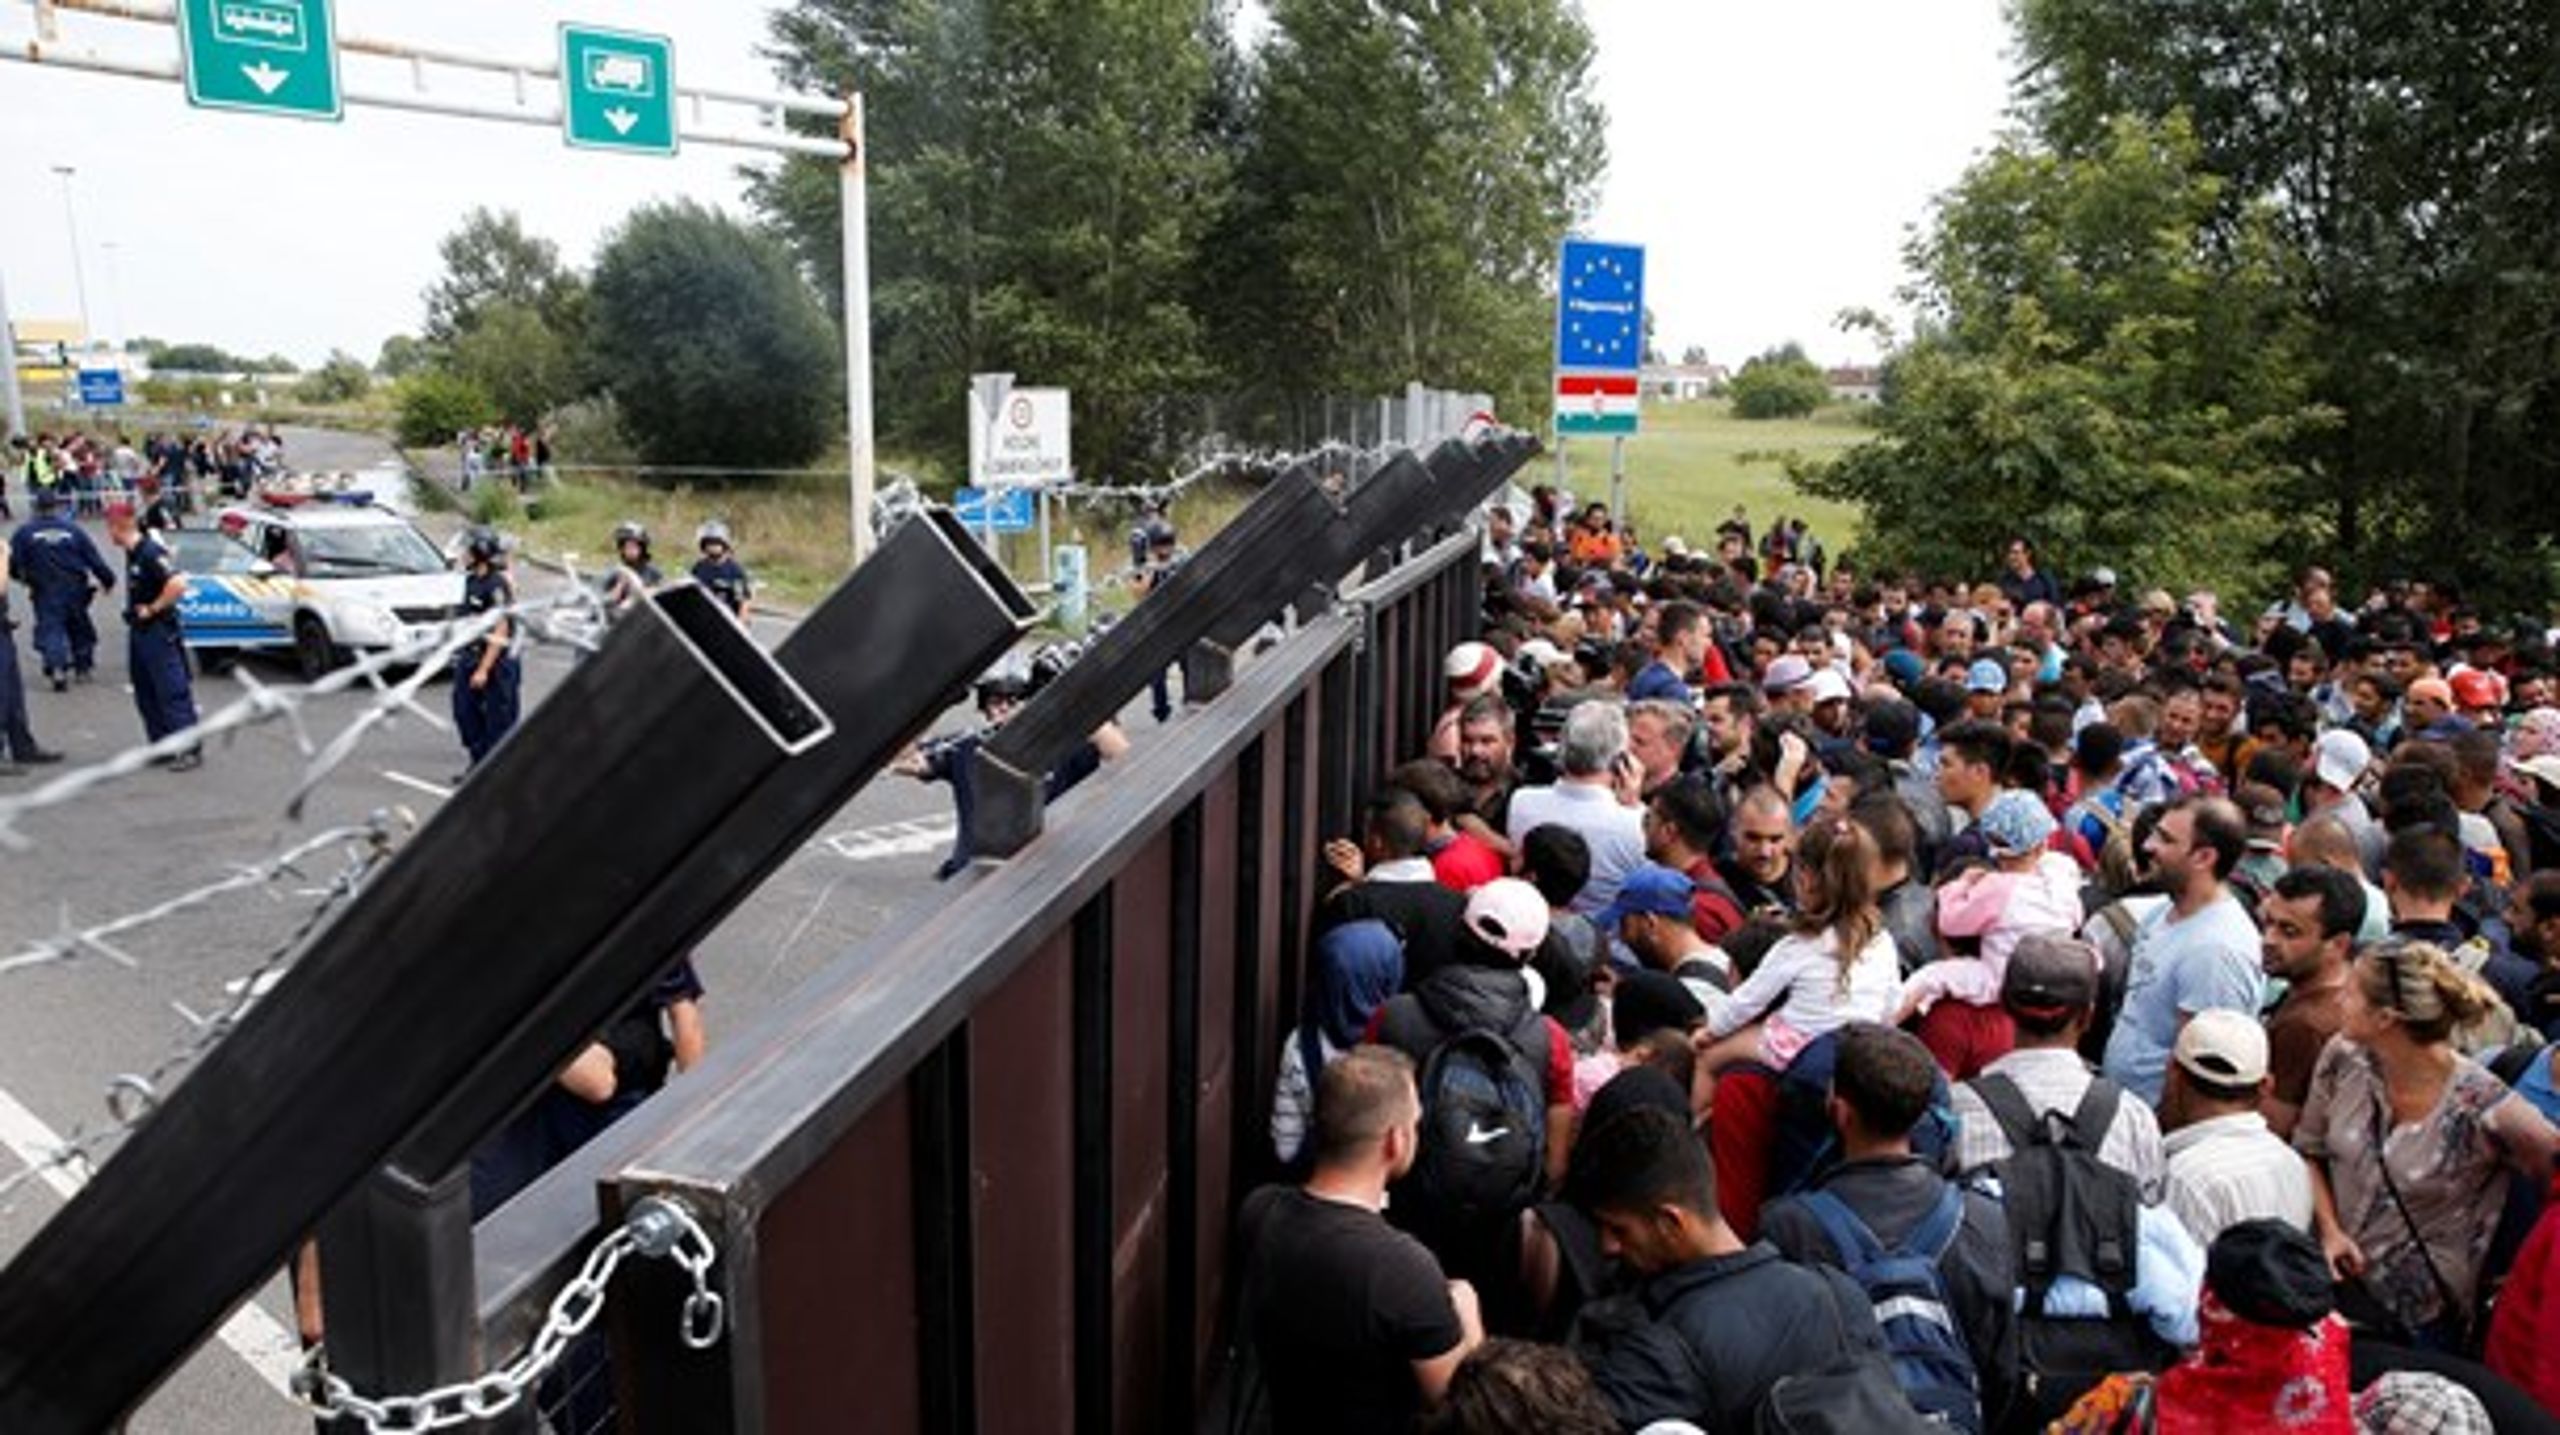 De fleste Europa-politikere siger nej til indvandring. Uden indvandring bliver det umuligt at opretholde et stabilt befolkningstal, skriver Knud Vilby.